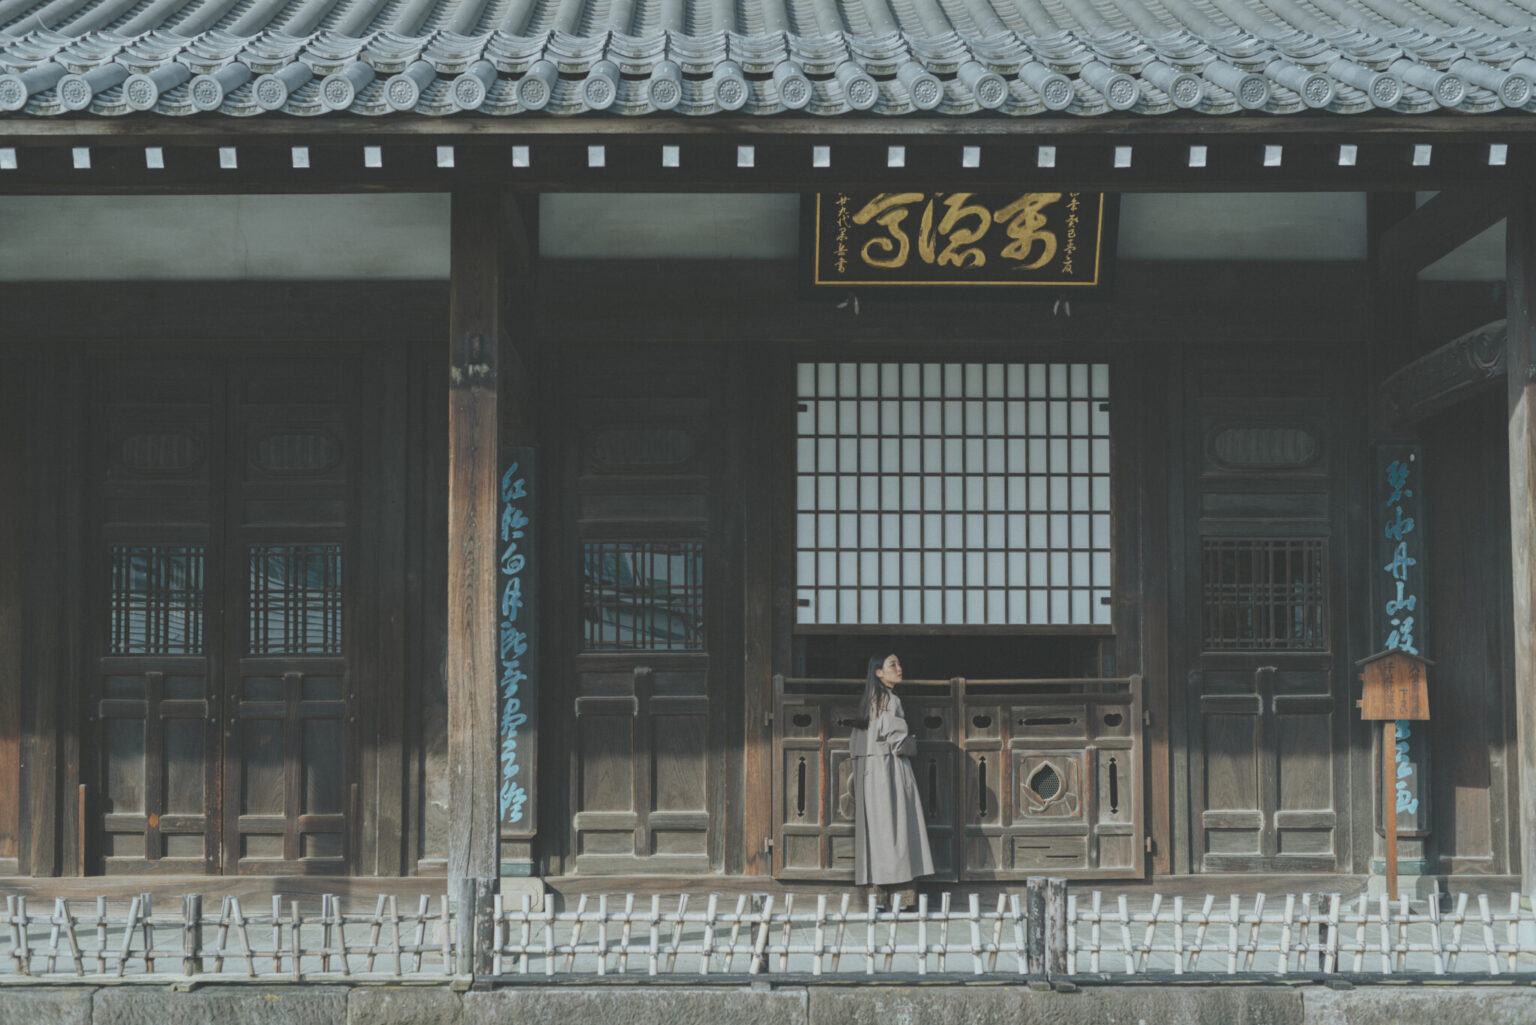 日本の寺院建築とは異なる意匠が目を引く。回廊の先に待ち構えているのは、東京に残された数少ない本格的な仏堂建築である大雄宝殿。桃の彫刻がついた扉や開梆（かいぱん／外に吊るされた木魚）が間近で見られる。